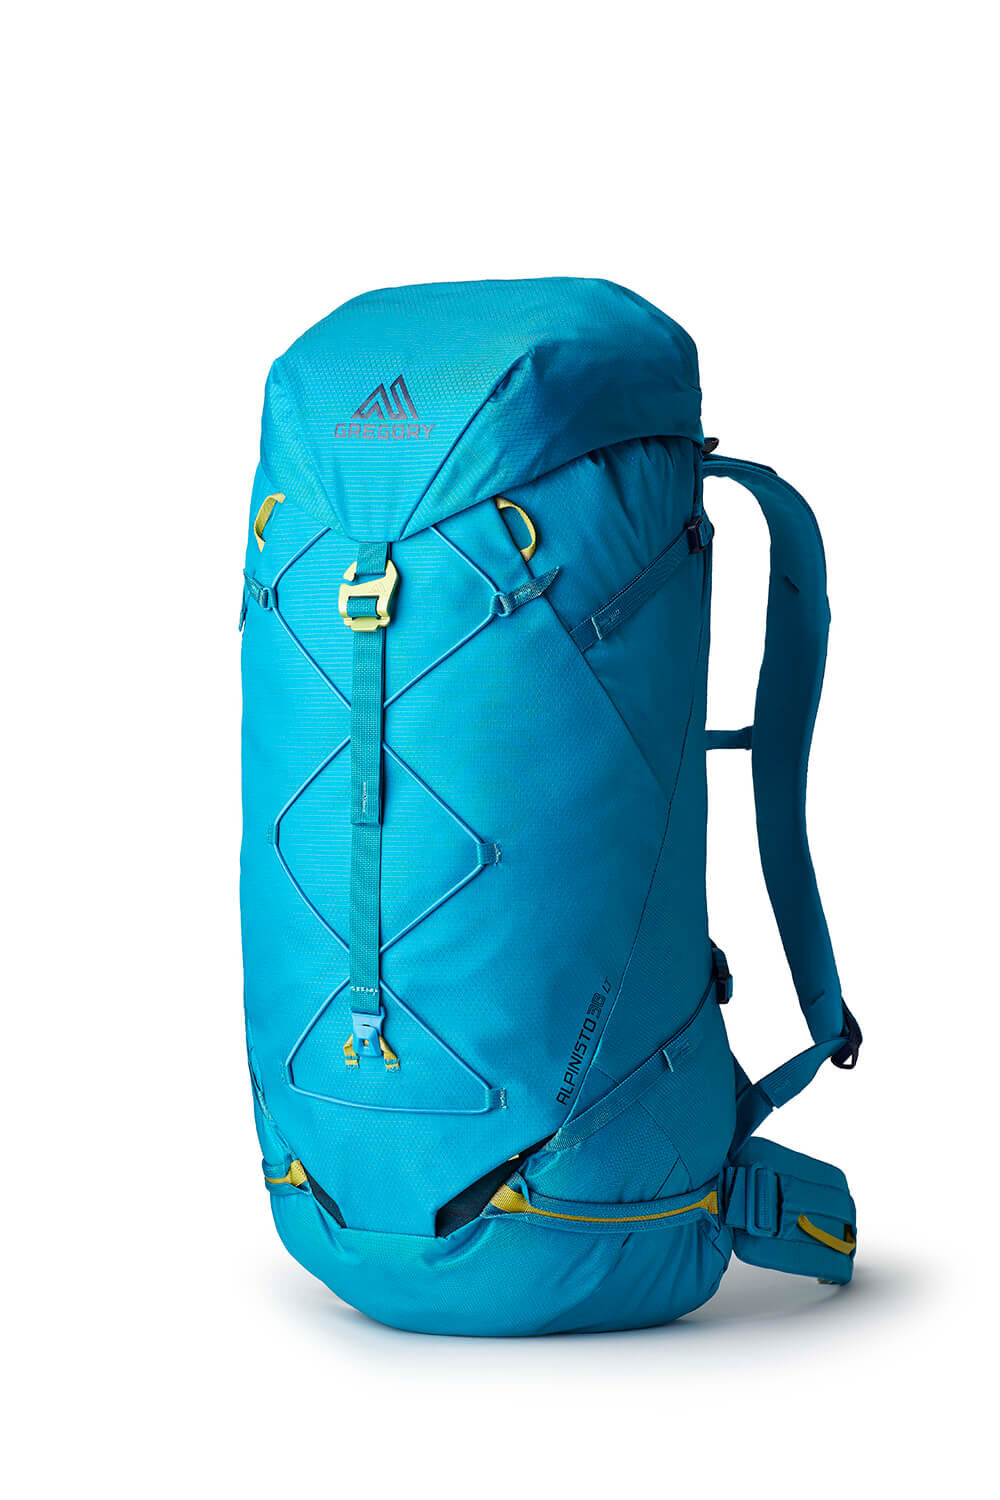 Alpinisto LT 38 Backpack Piton Blue | Gregory Sweden